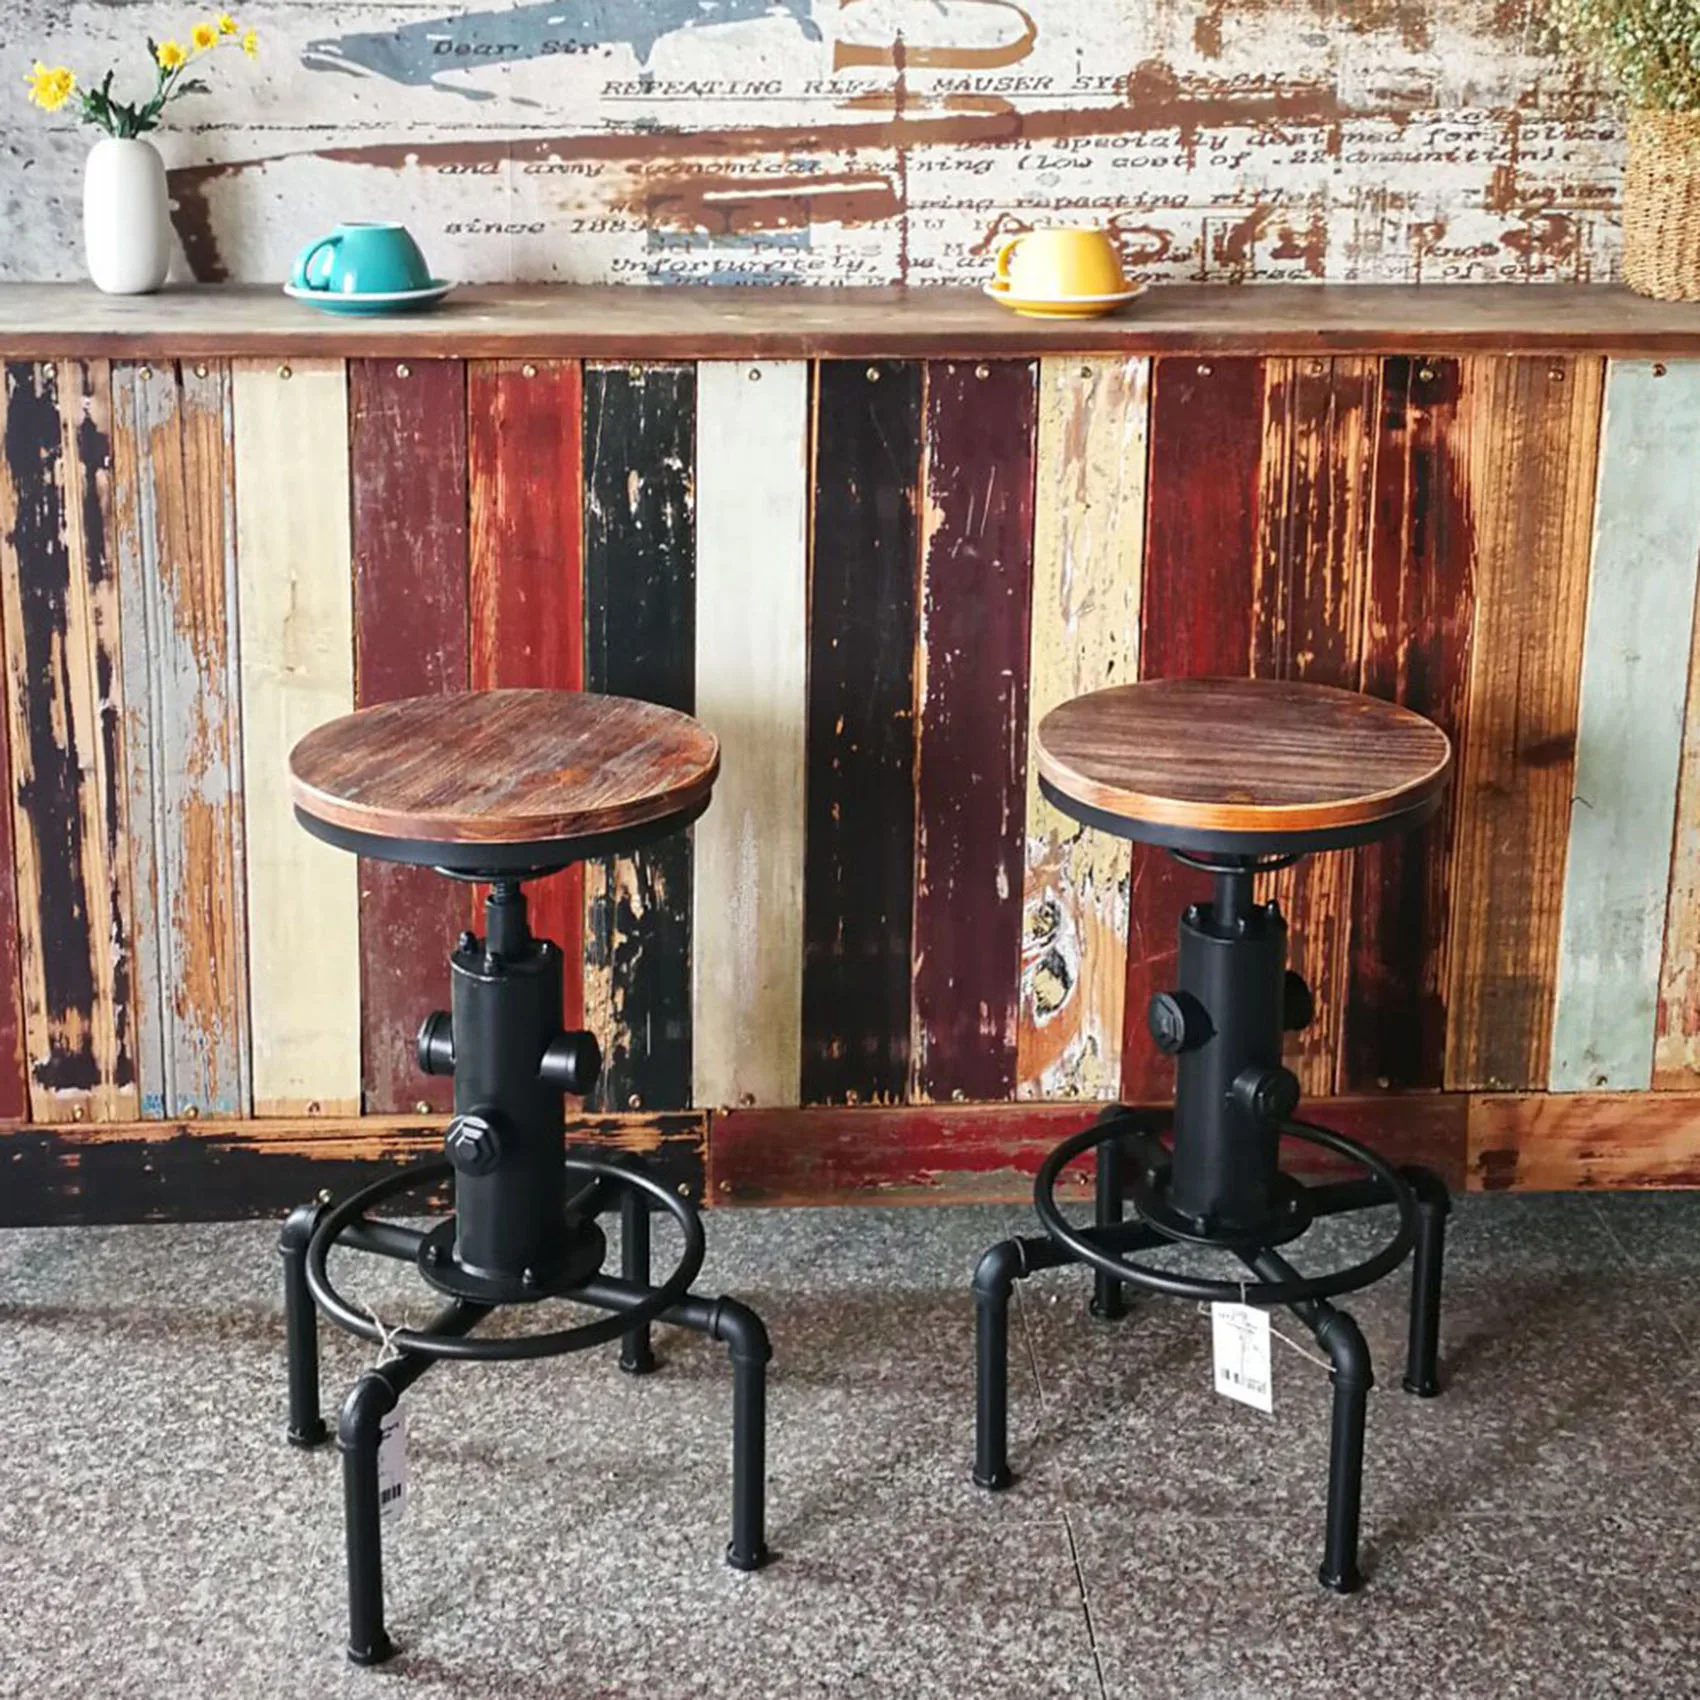 

Металлический индустриальный барный стул с регулируемой высотой и поворотным верхом из сосны, кухонный обеденный стул в стиле трубы, барны...